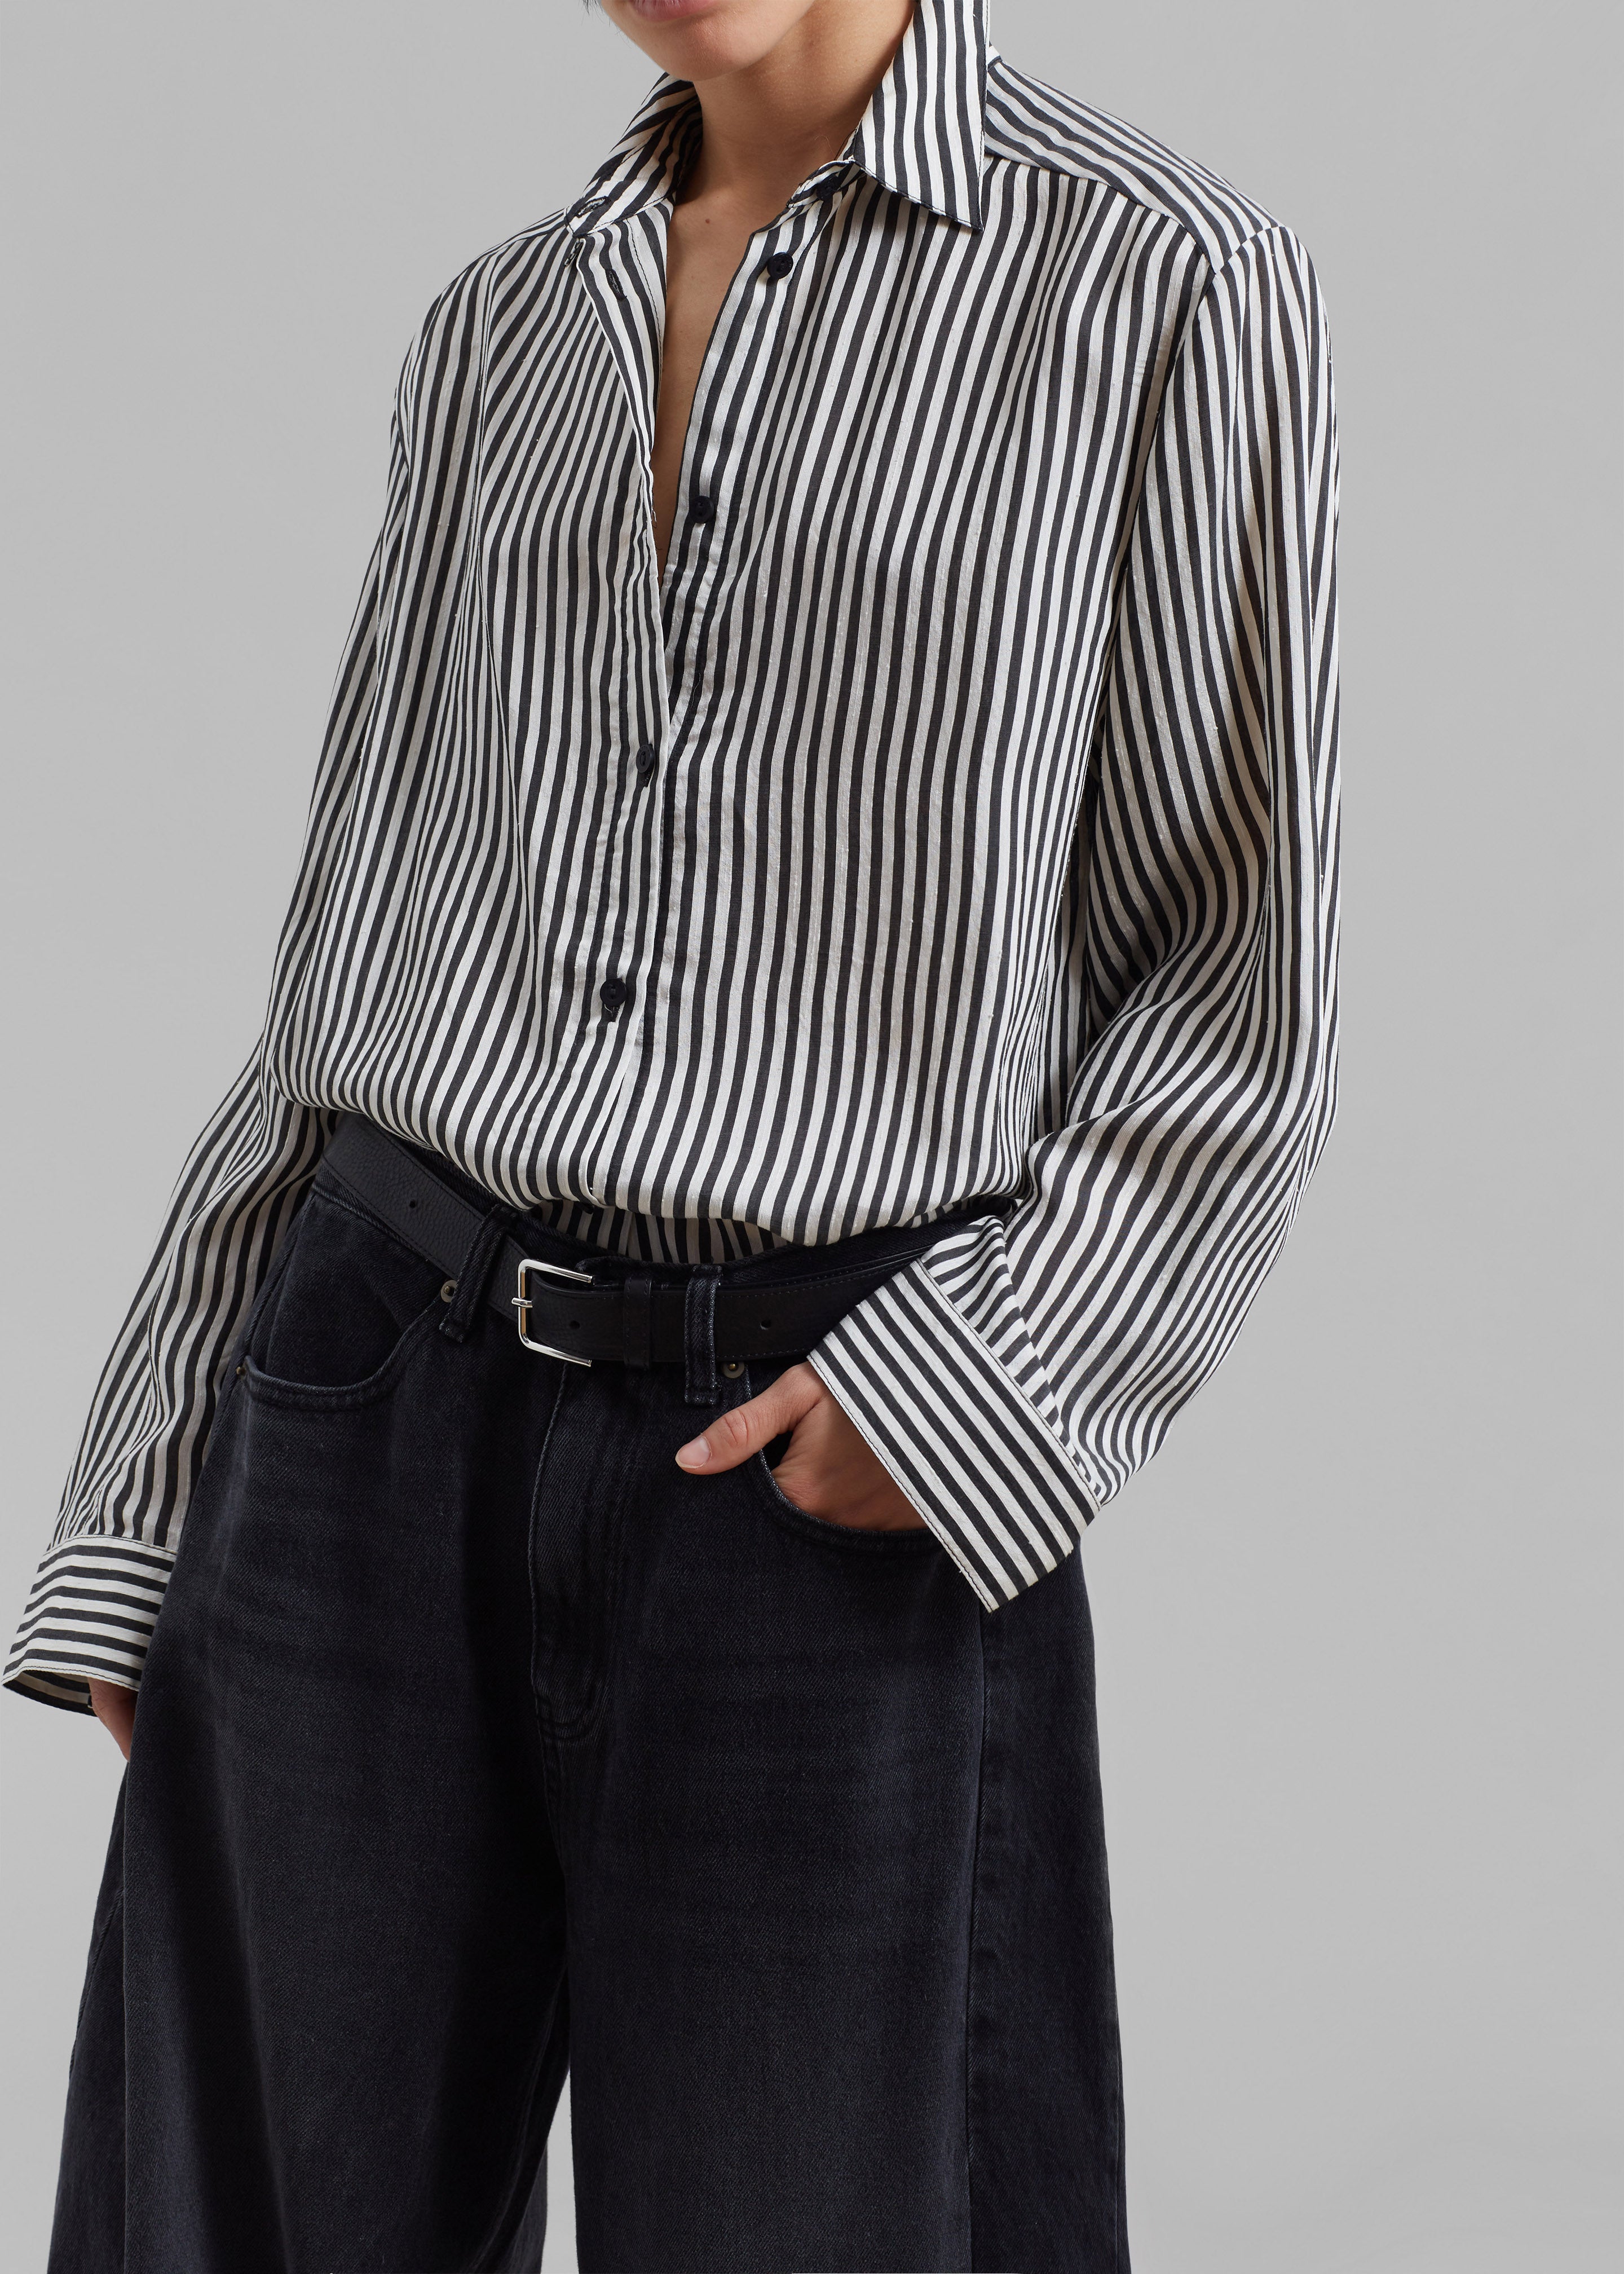 Matteau Classic Contrast Stripe Shirt - Ink Stripe